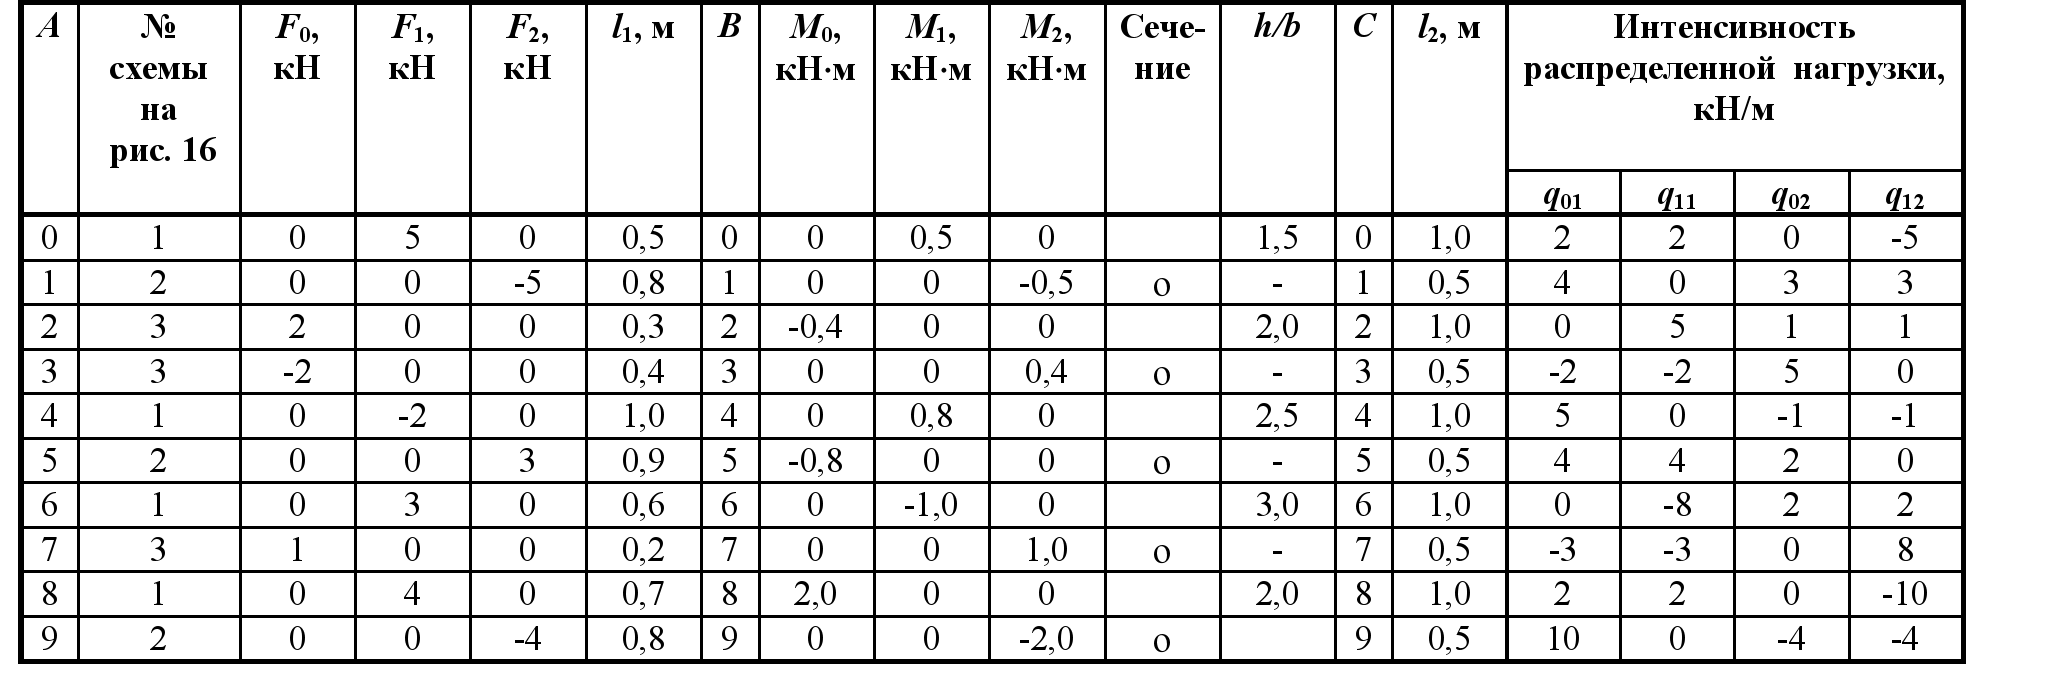 Калькулятор обоев – онлайн расчет количества рулонов обоев на комнату + таблица